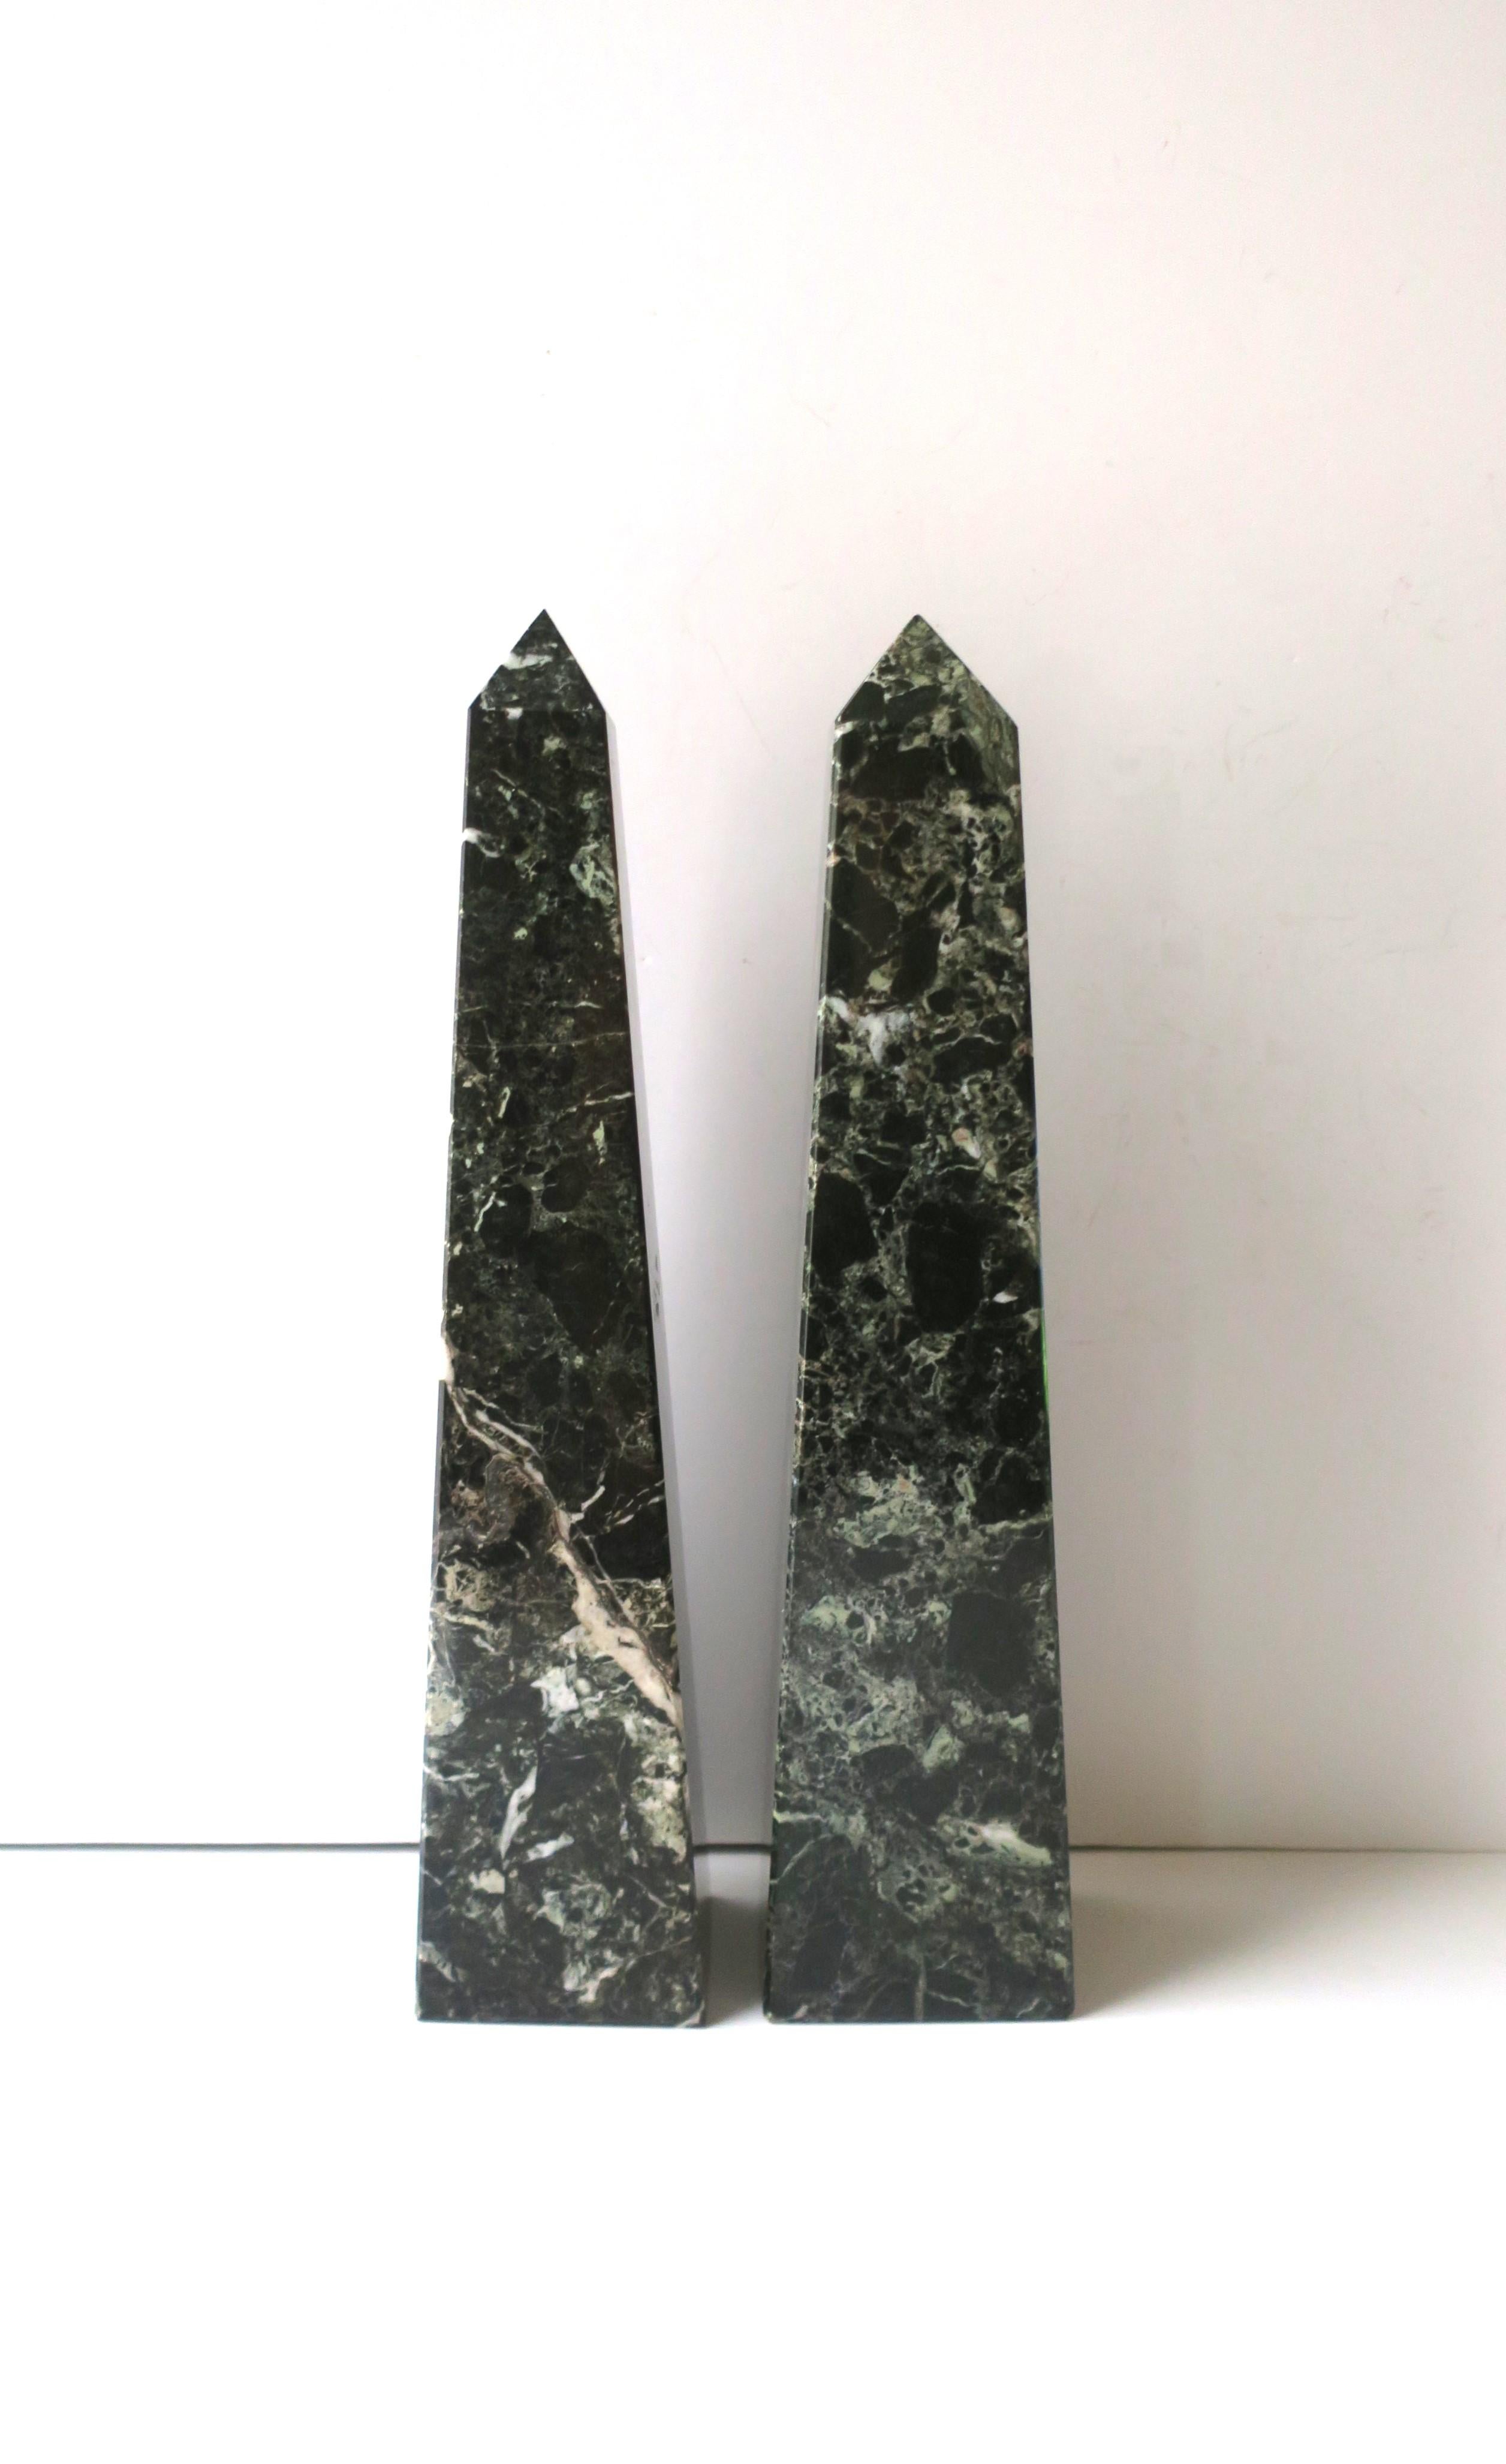 Importante paire d'obélisques en marbre, de style moderne, vers le milieu du XXe siècle. Les paires sont d'un vert très foncé, vert forêt, avec des veines blanches et vert clair. Très bon état, comme le montrent les images. Aucun éclat n'a été